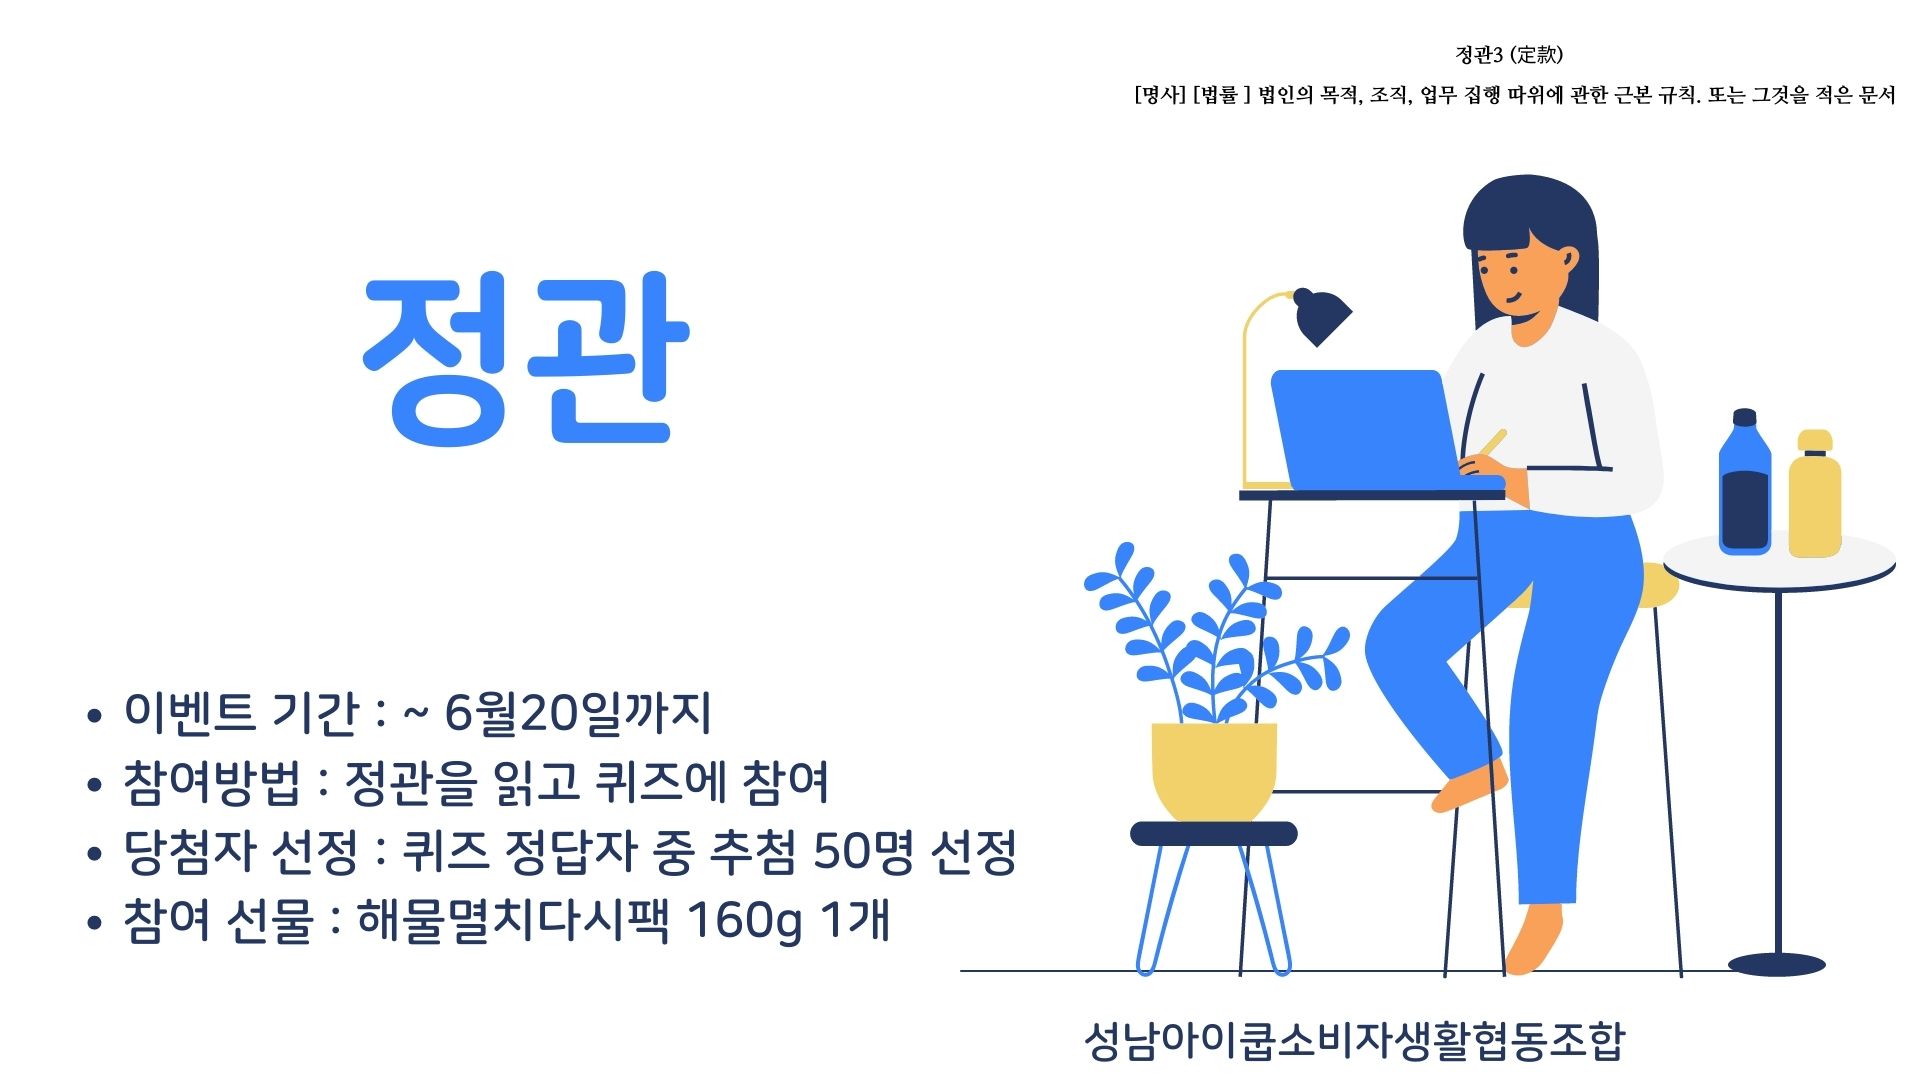 성남아이쿱 조합원 정관읽기 골든벨 ~~1탄!